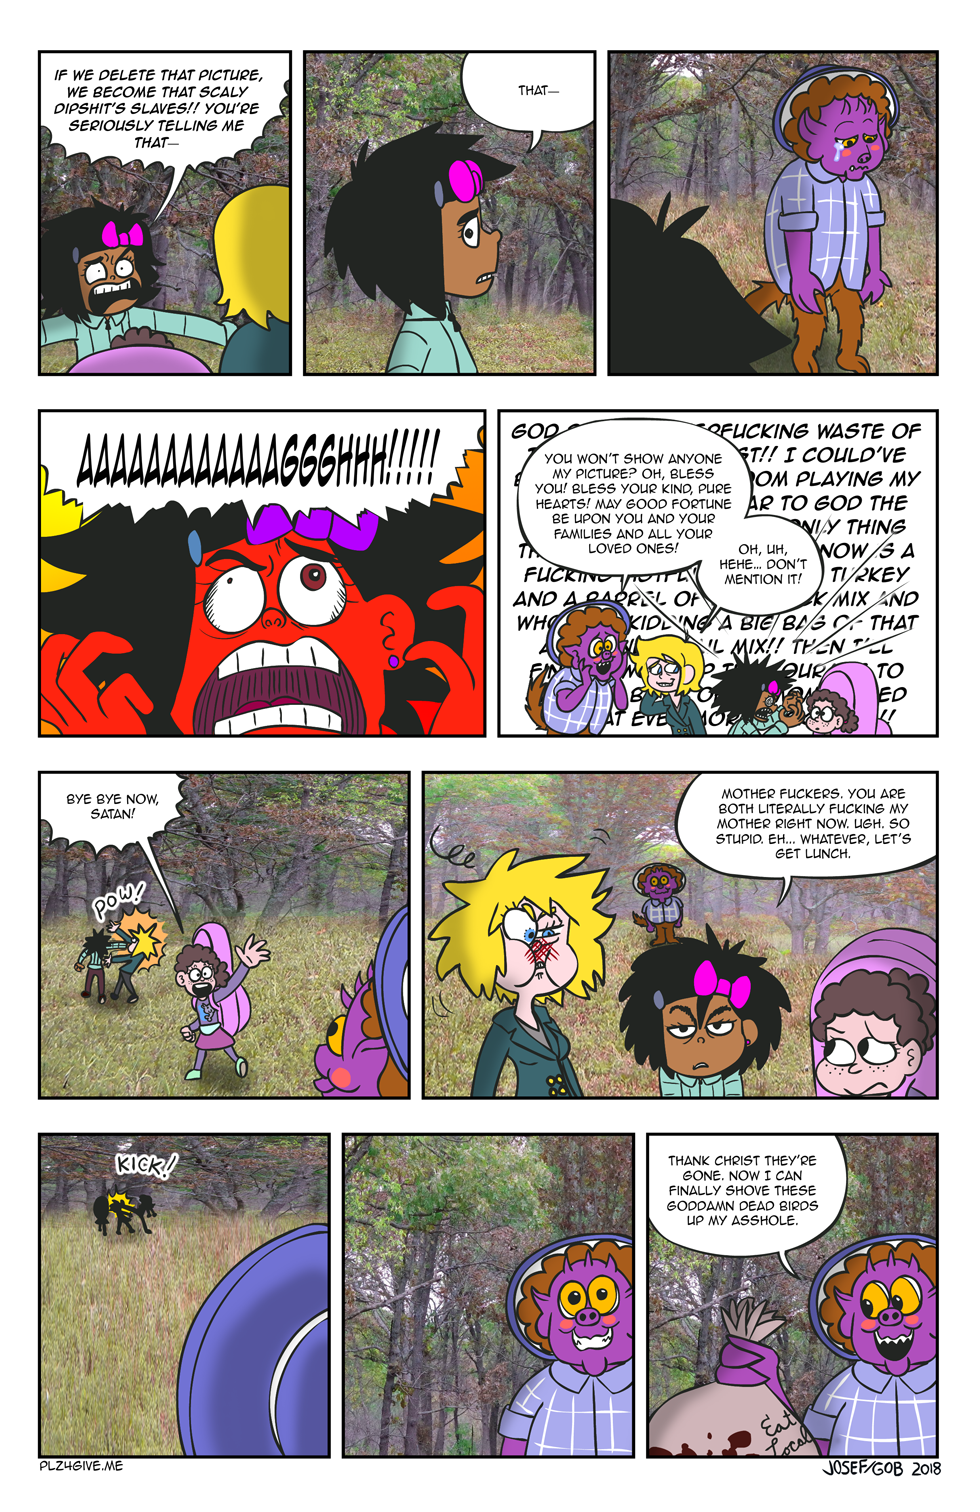 040: Cat Stalks Deer || ViralHog – Page 3/3